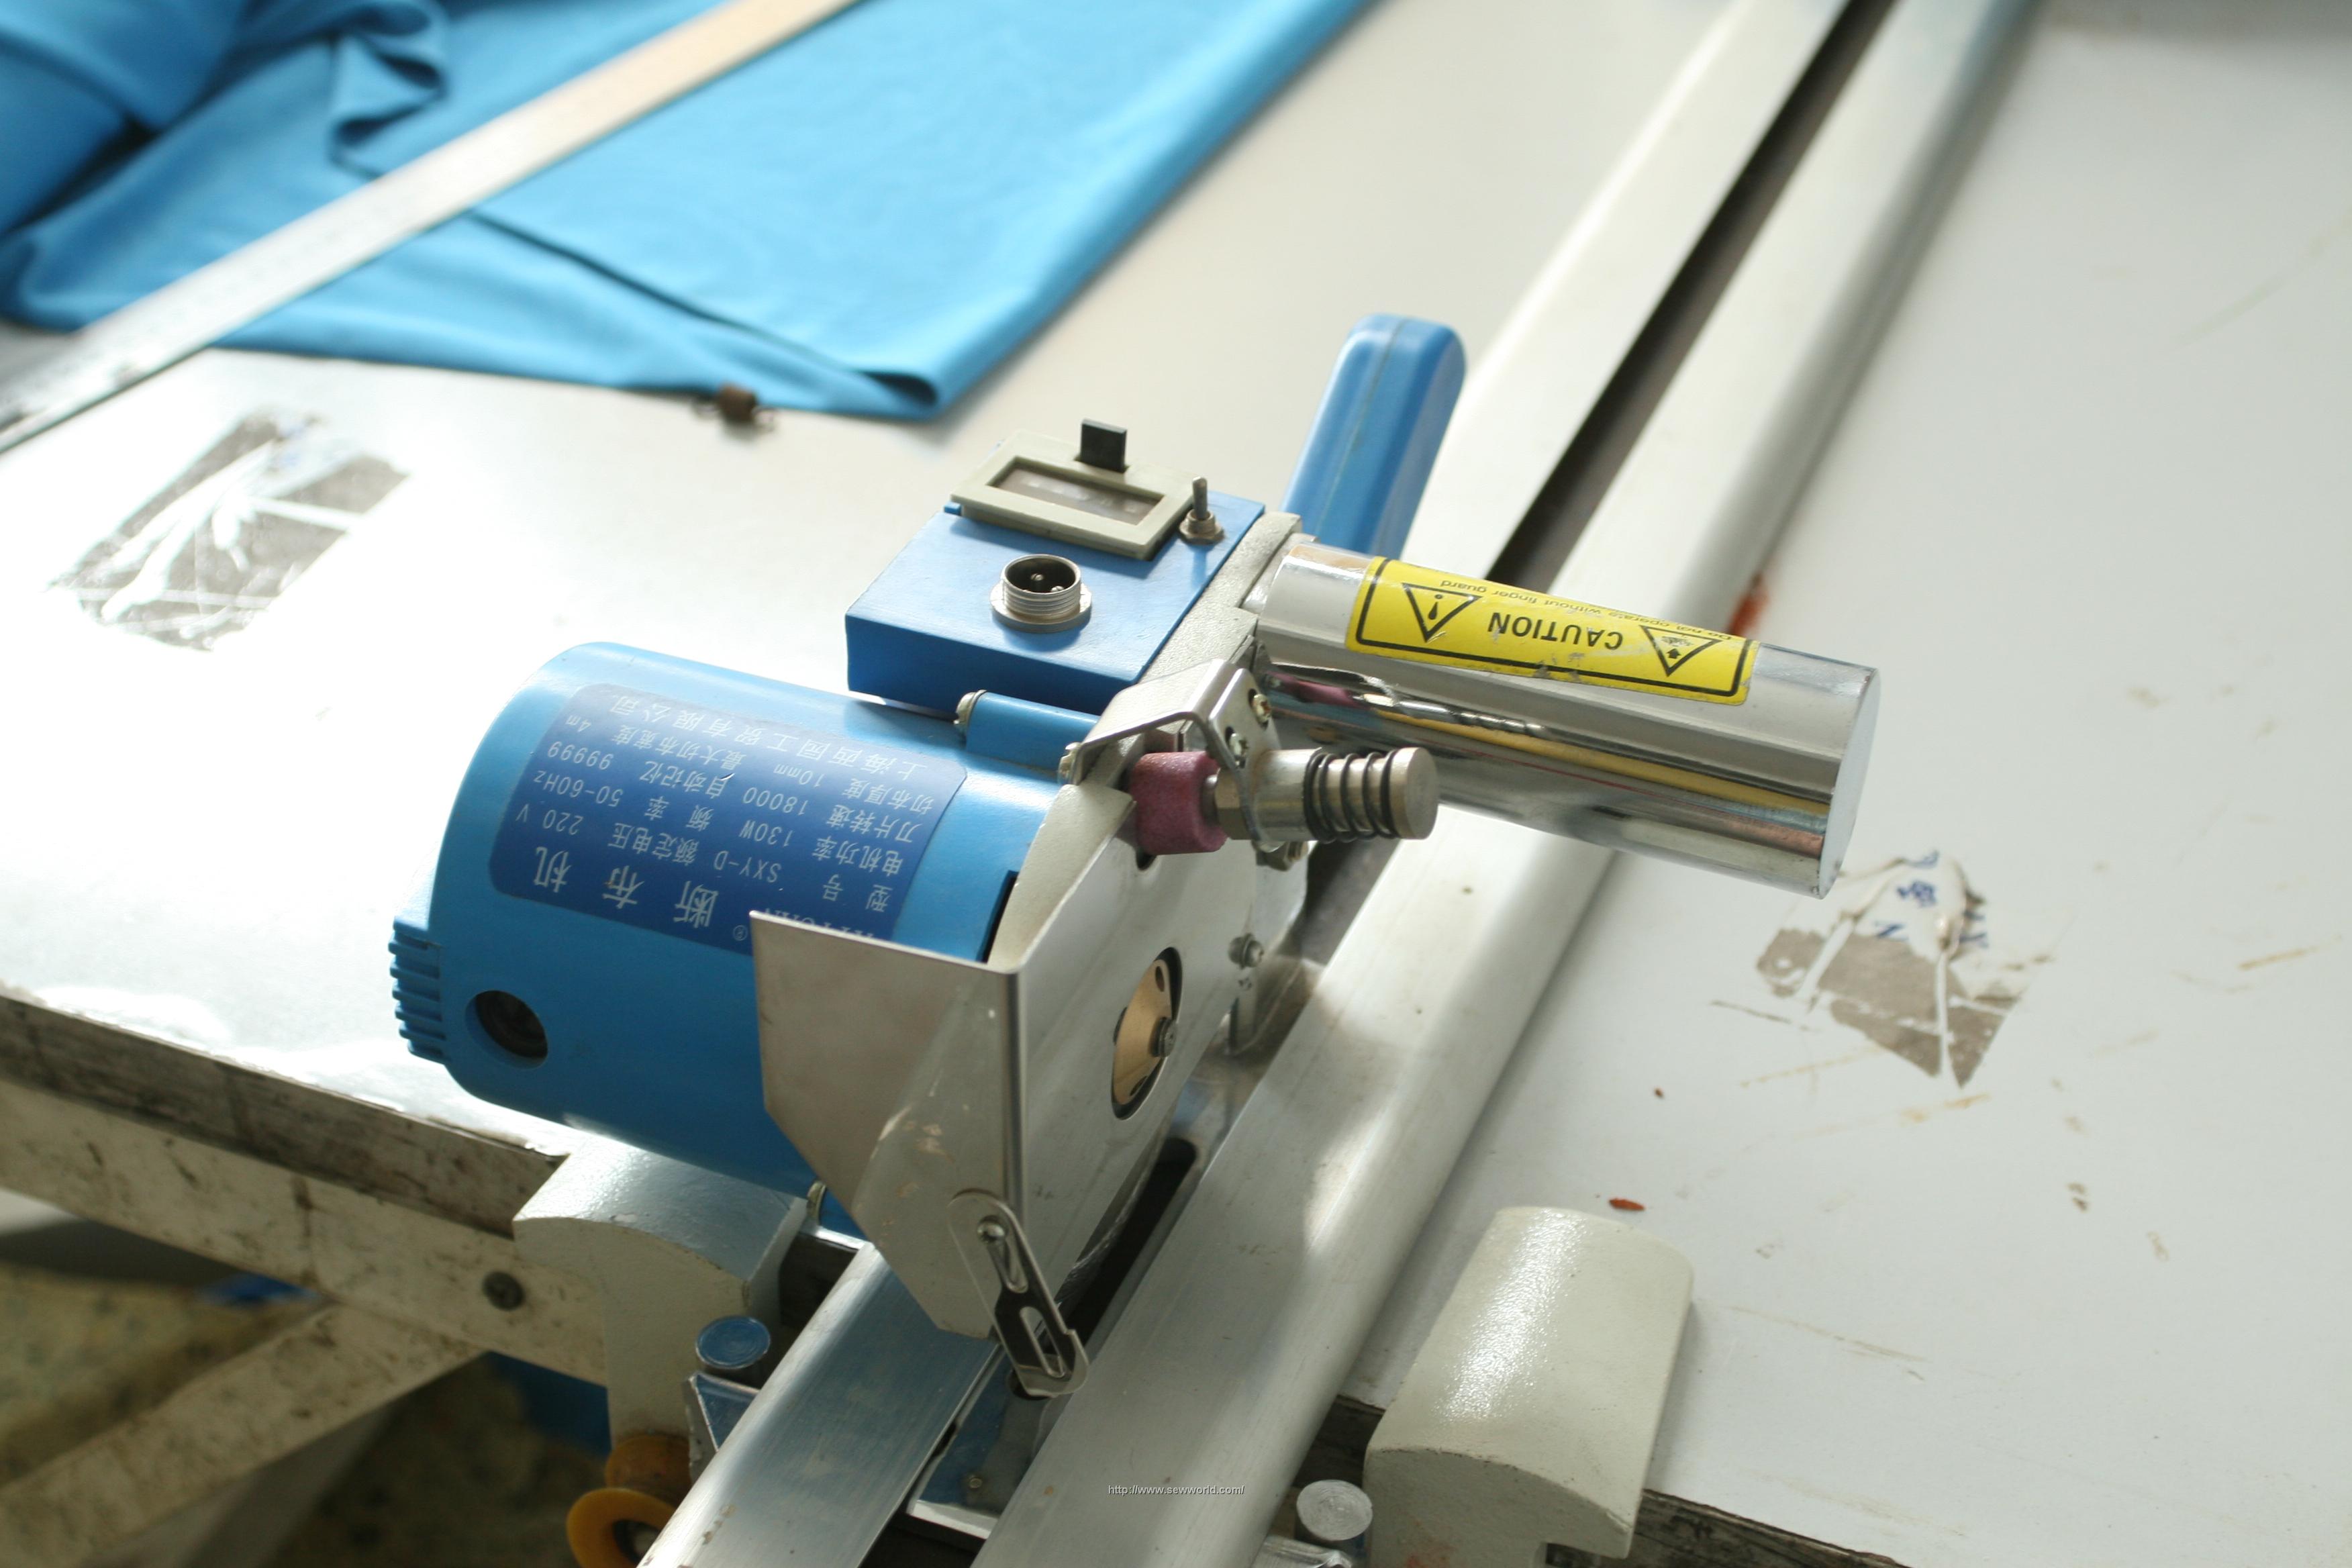 断布机(图)|淄博西园缝纫设备有限公司 - 纺织机械